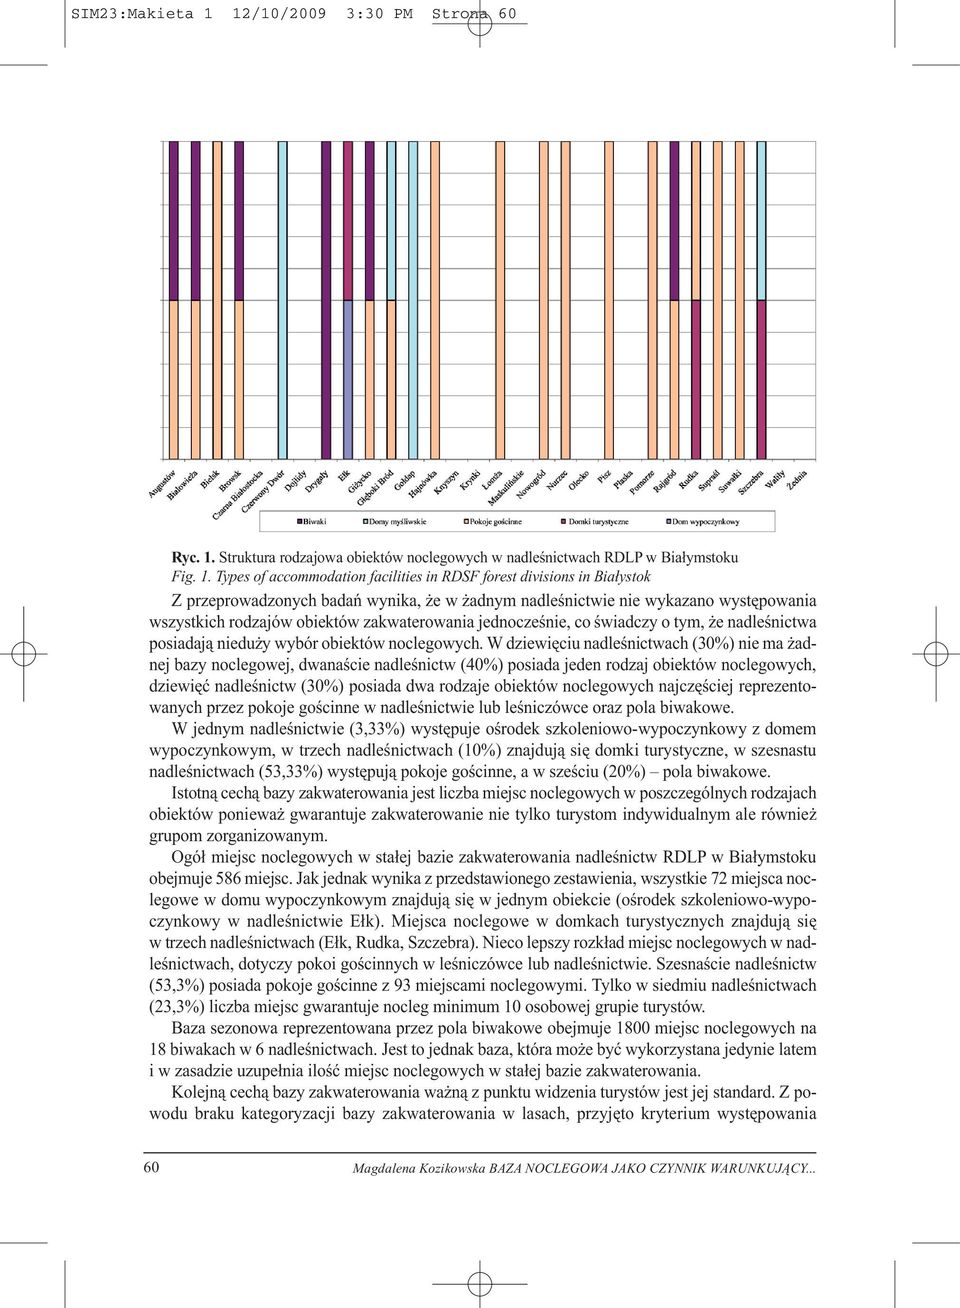 Struktura rodzajowa obiektów noclegowych w nadleśnictwach RDLP w Białymstoku Fig. 1.